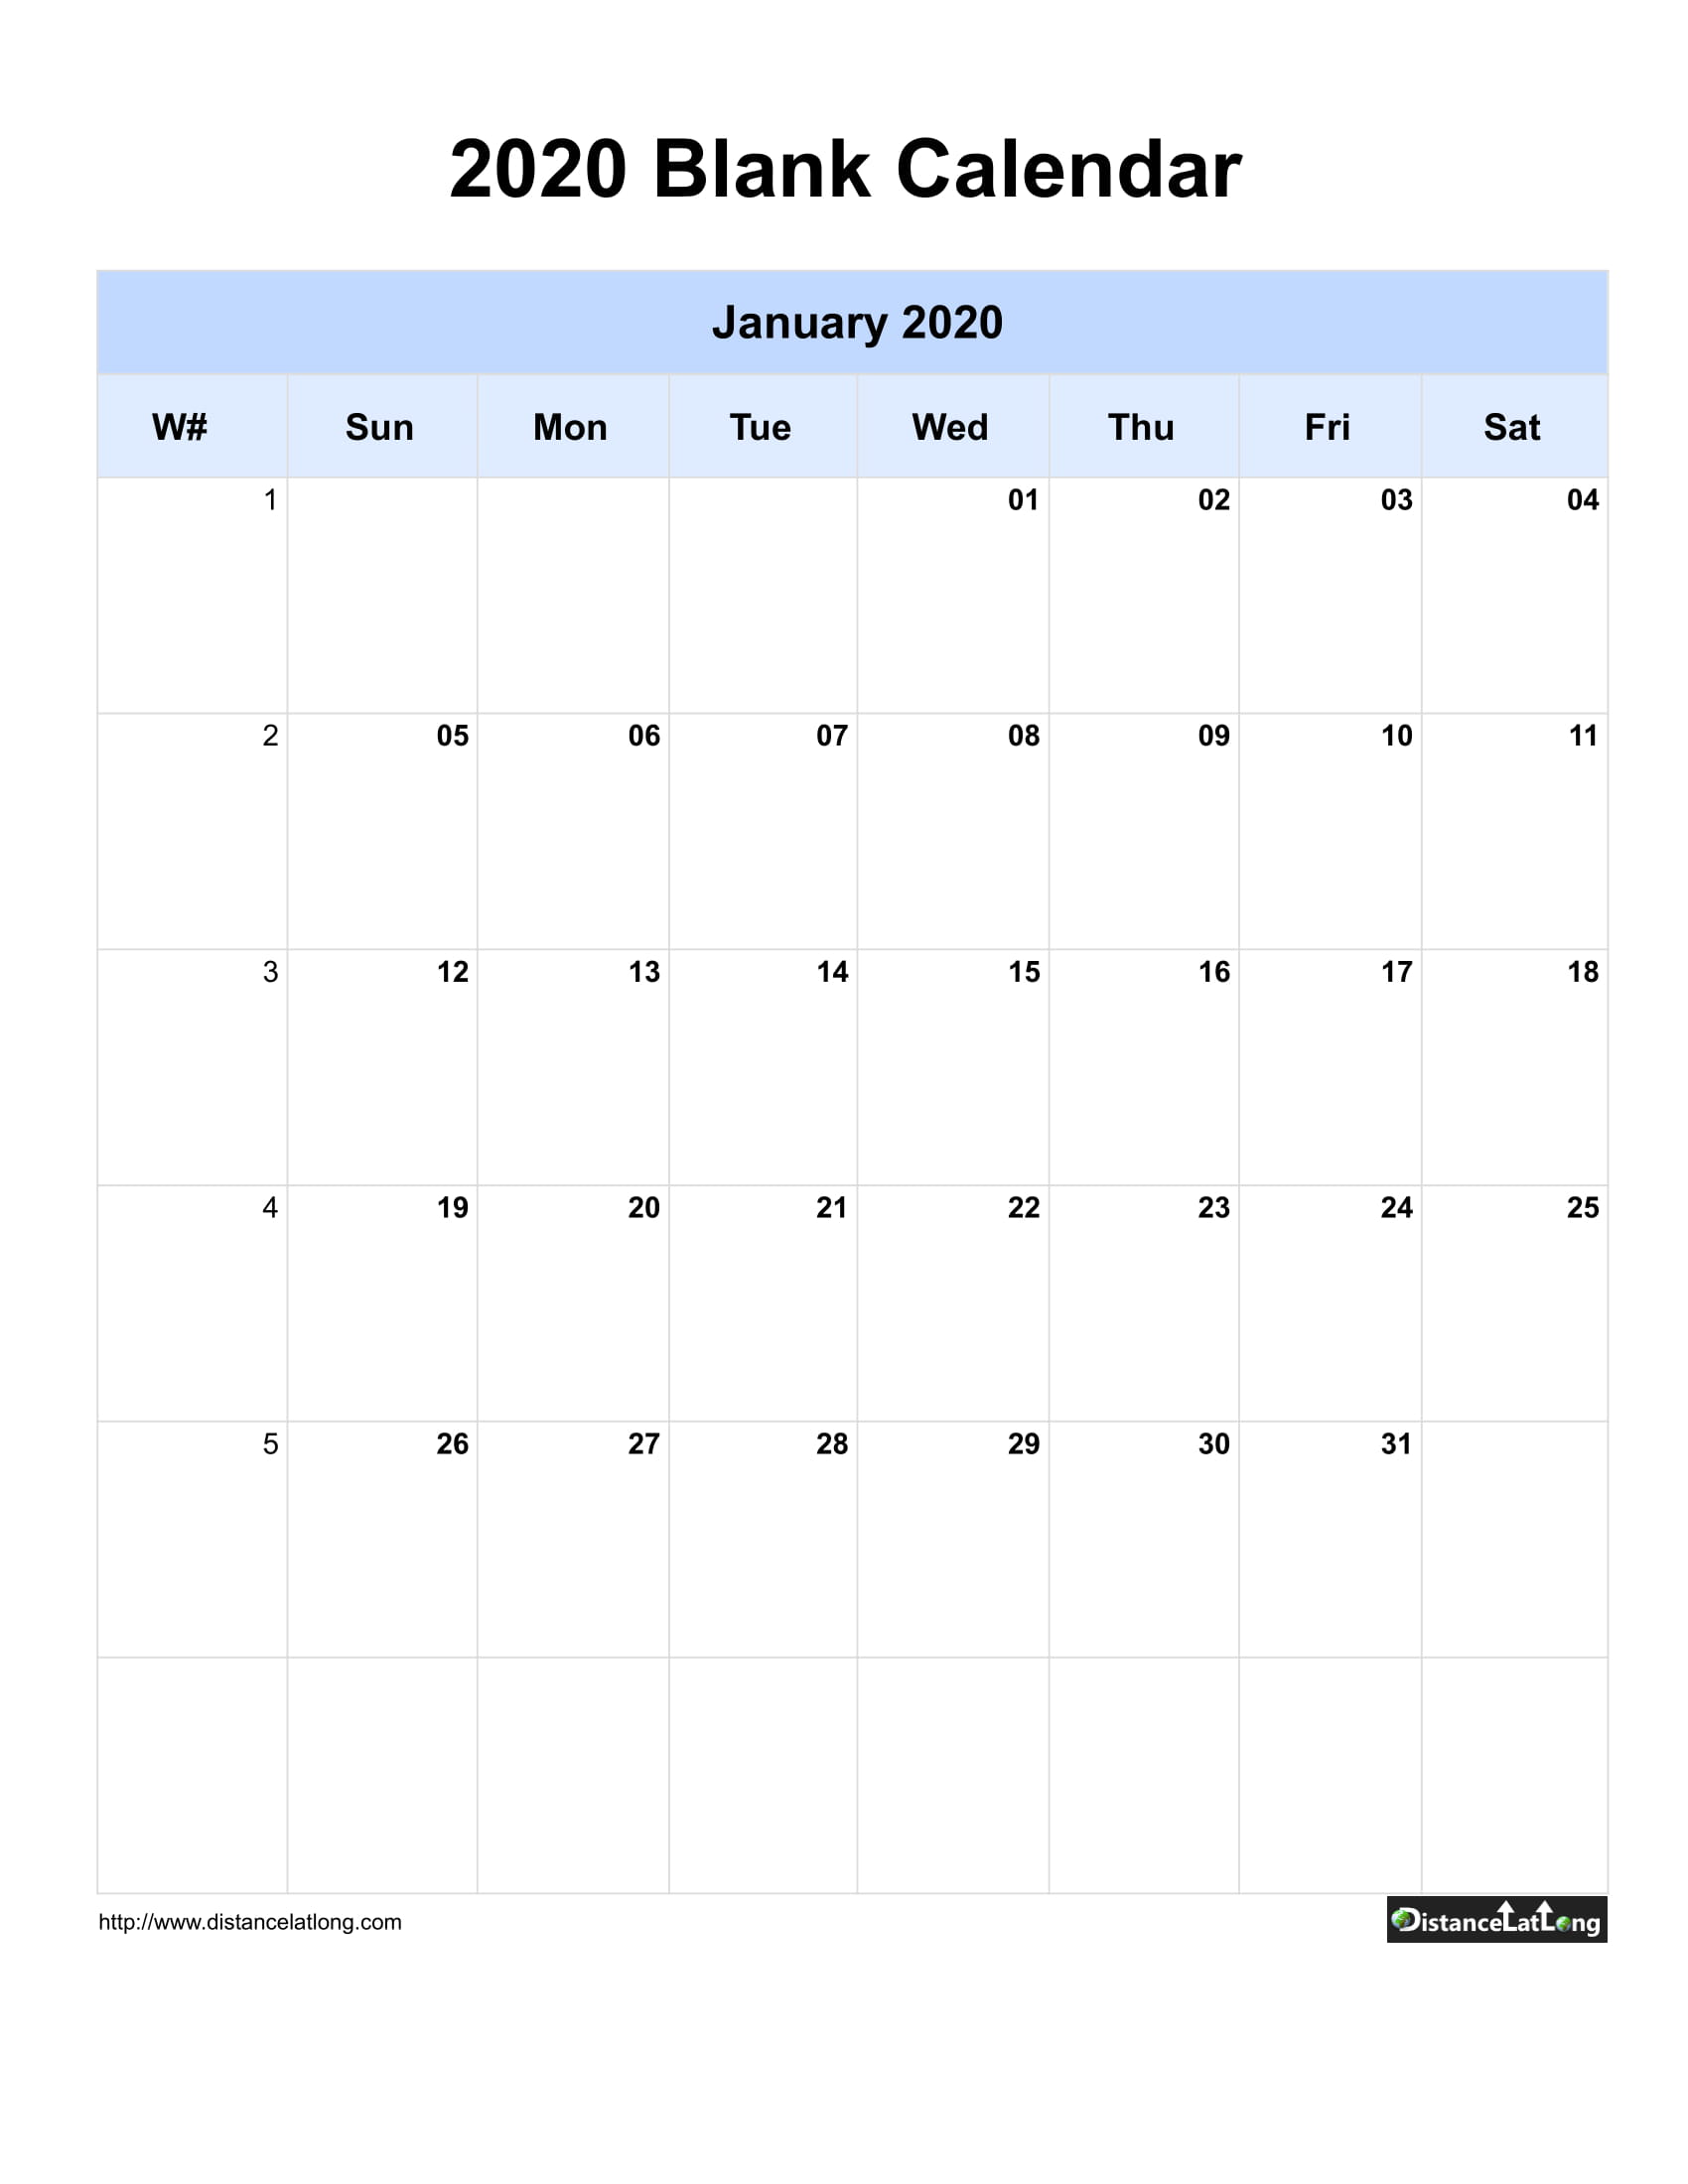 Free Downloadable Calendar Template from www.distancelatlong.com